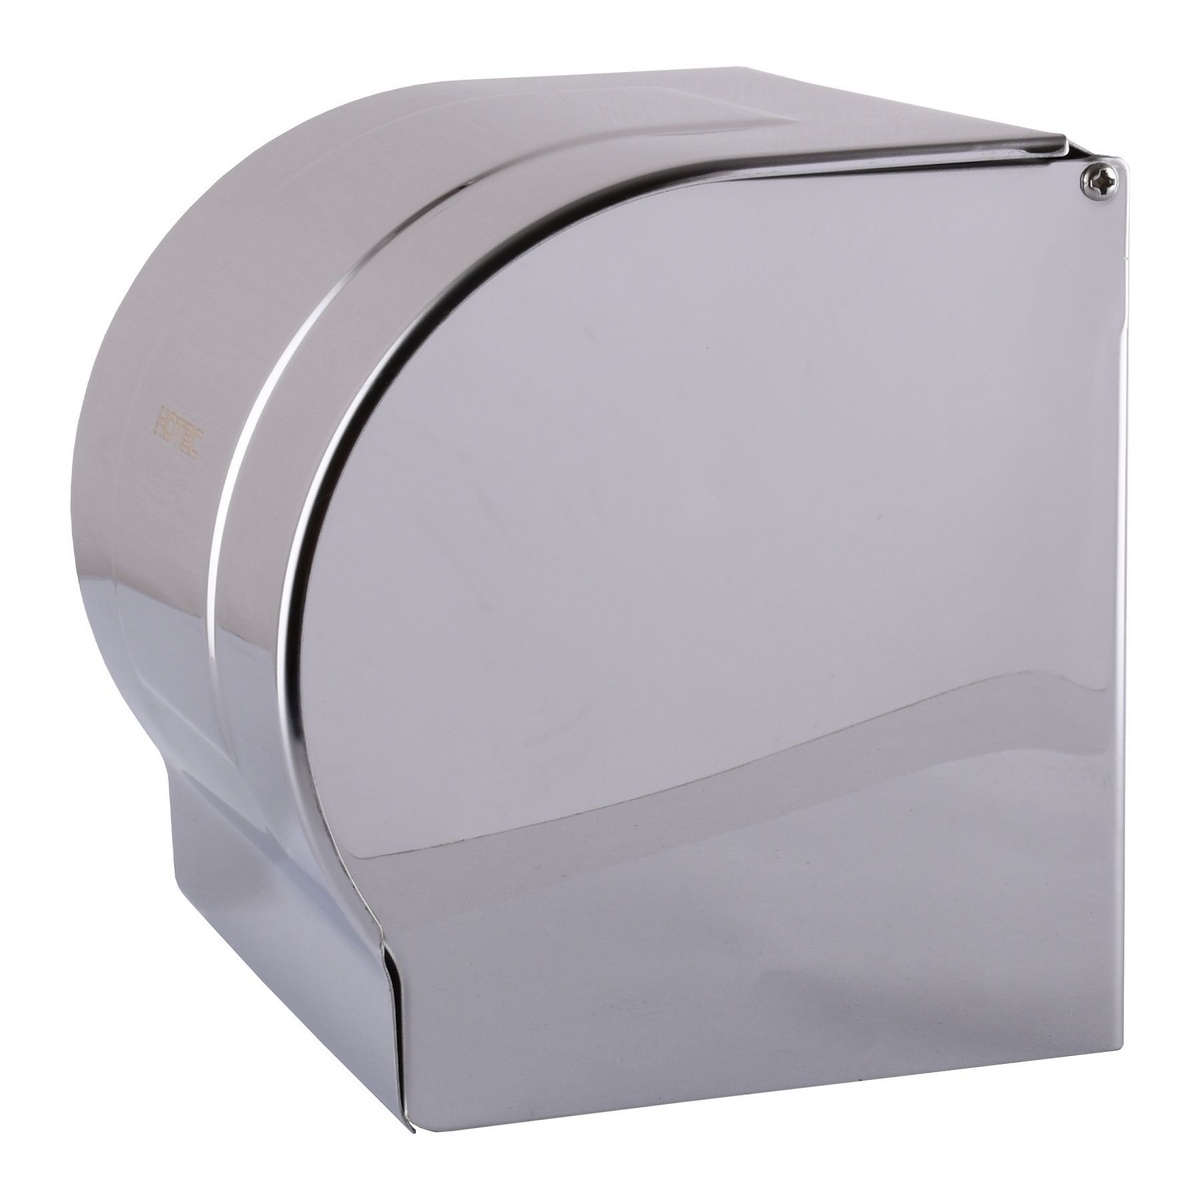 Диспенсер для туалетной бумаги HOTEC 16.623 Stainless Steel 000007813 подвесной из нержавеющей стали хром